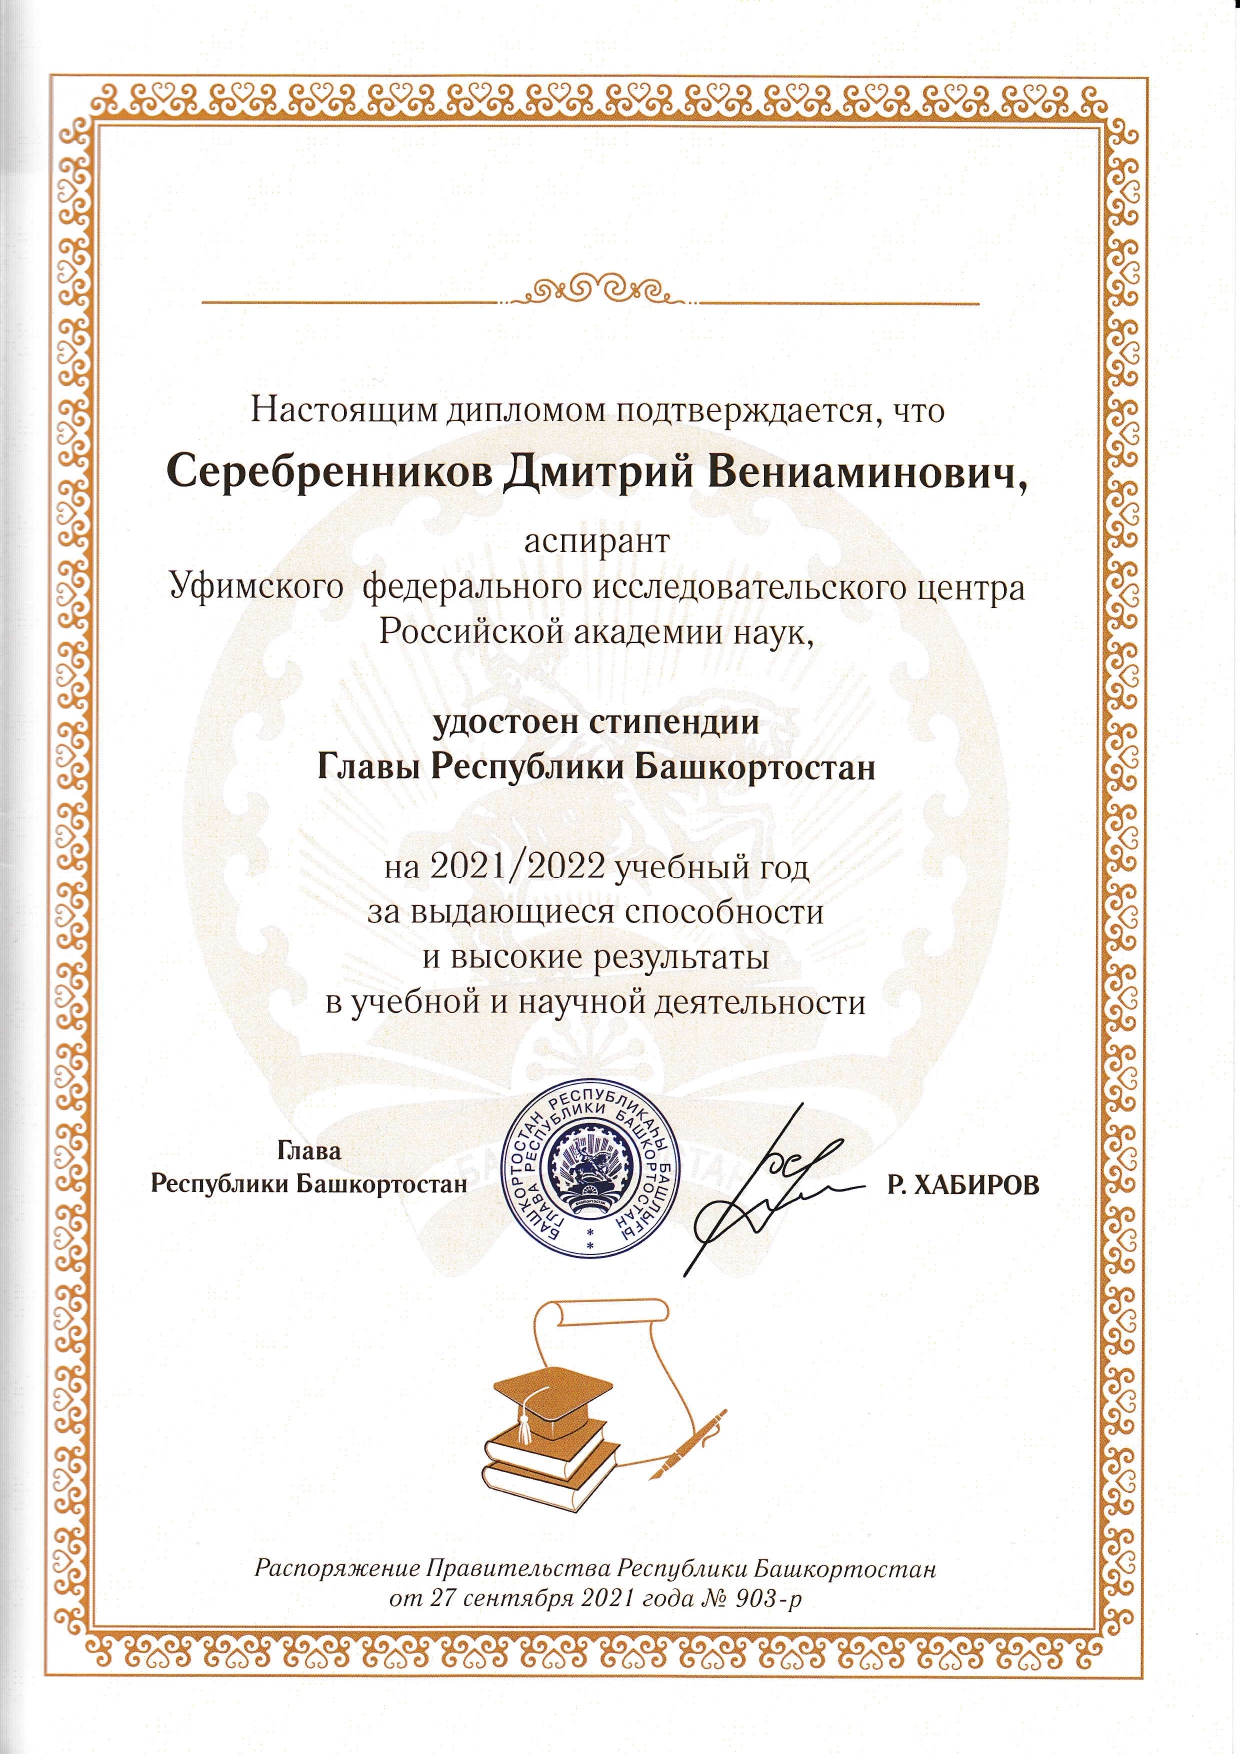 Поздравляем аспиранта ИНК УФИЦ РАН с получением стипендии Главы Республики Башкортостан